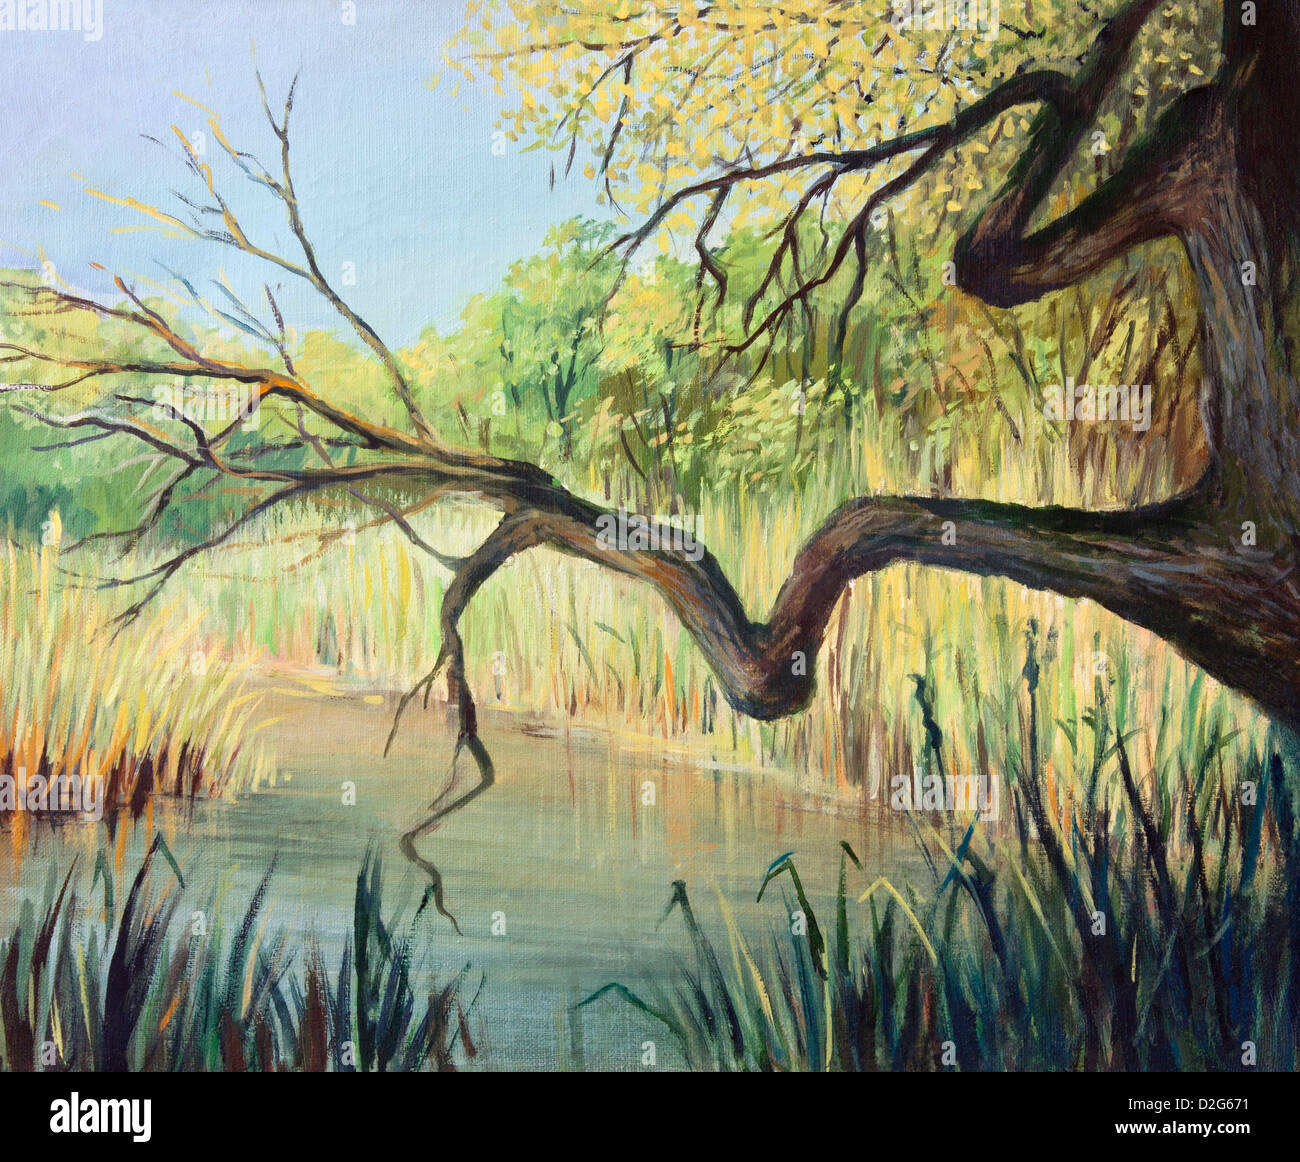 Un dipinto ad olio su tela di un piccolo lago tranquillo all'inizio dell'autunno. Un luogo pieno di tranquillità. Foto Stock